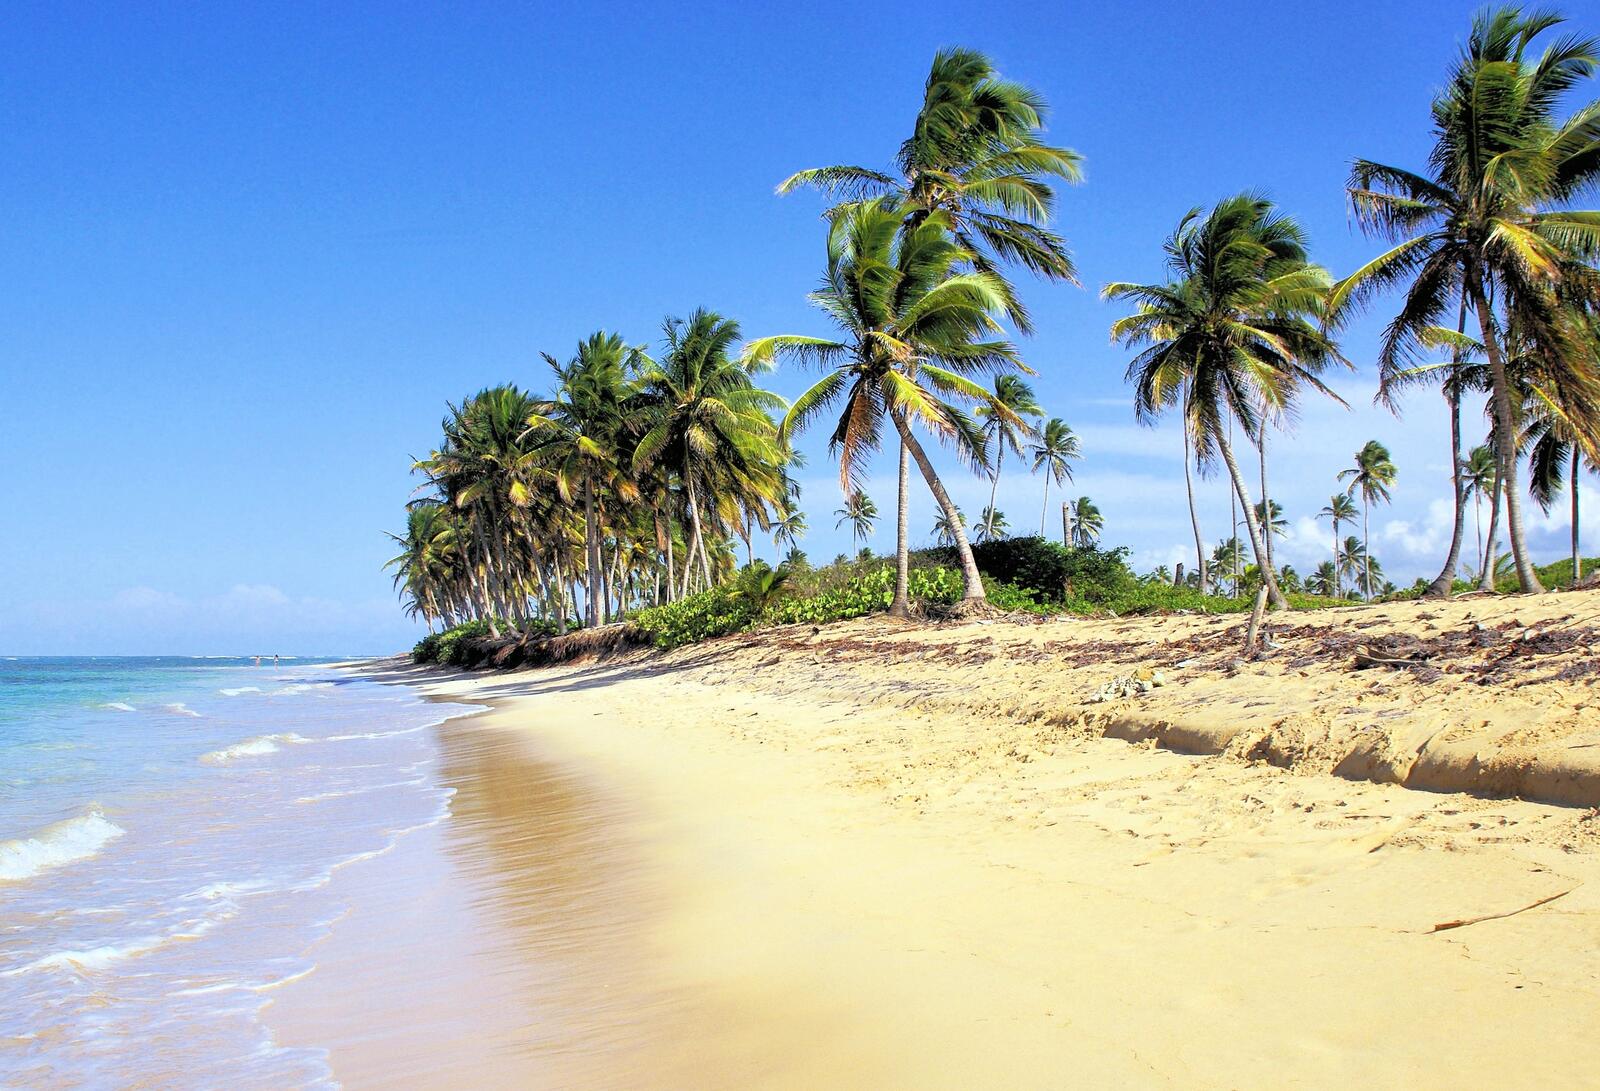 Бесплатное фото Песочный пляж с пальмами на берегу океана